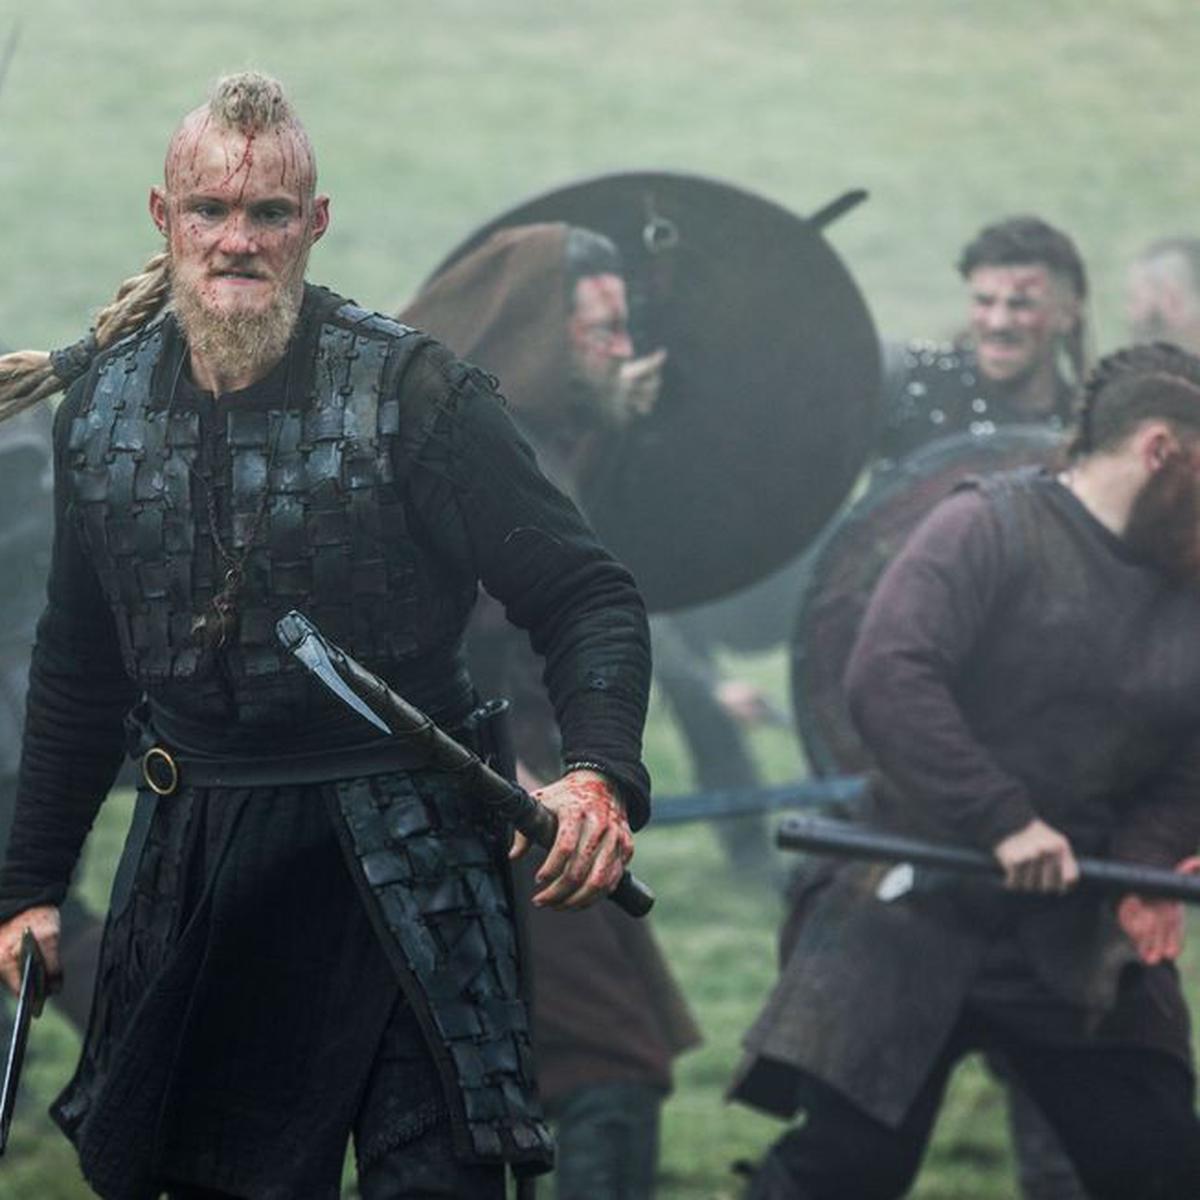 Vikings: Comparações entre a morte de Bjorn Ironside na vida real e na série